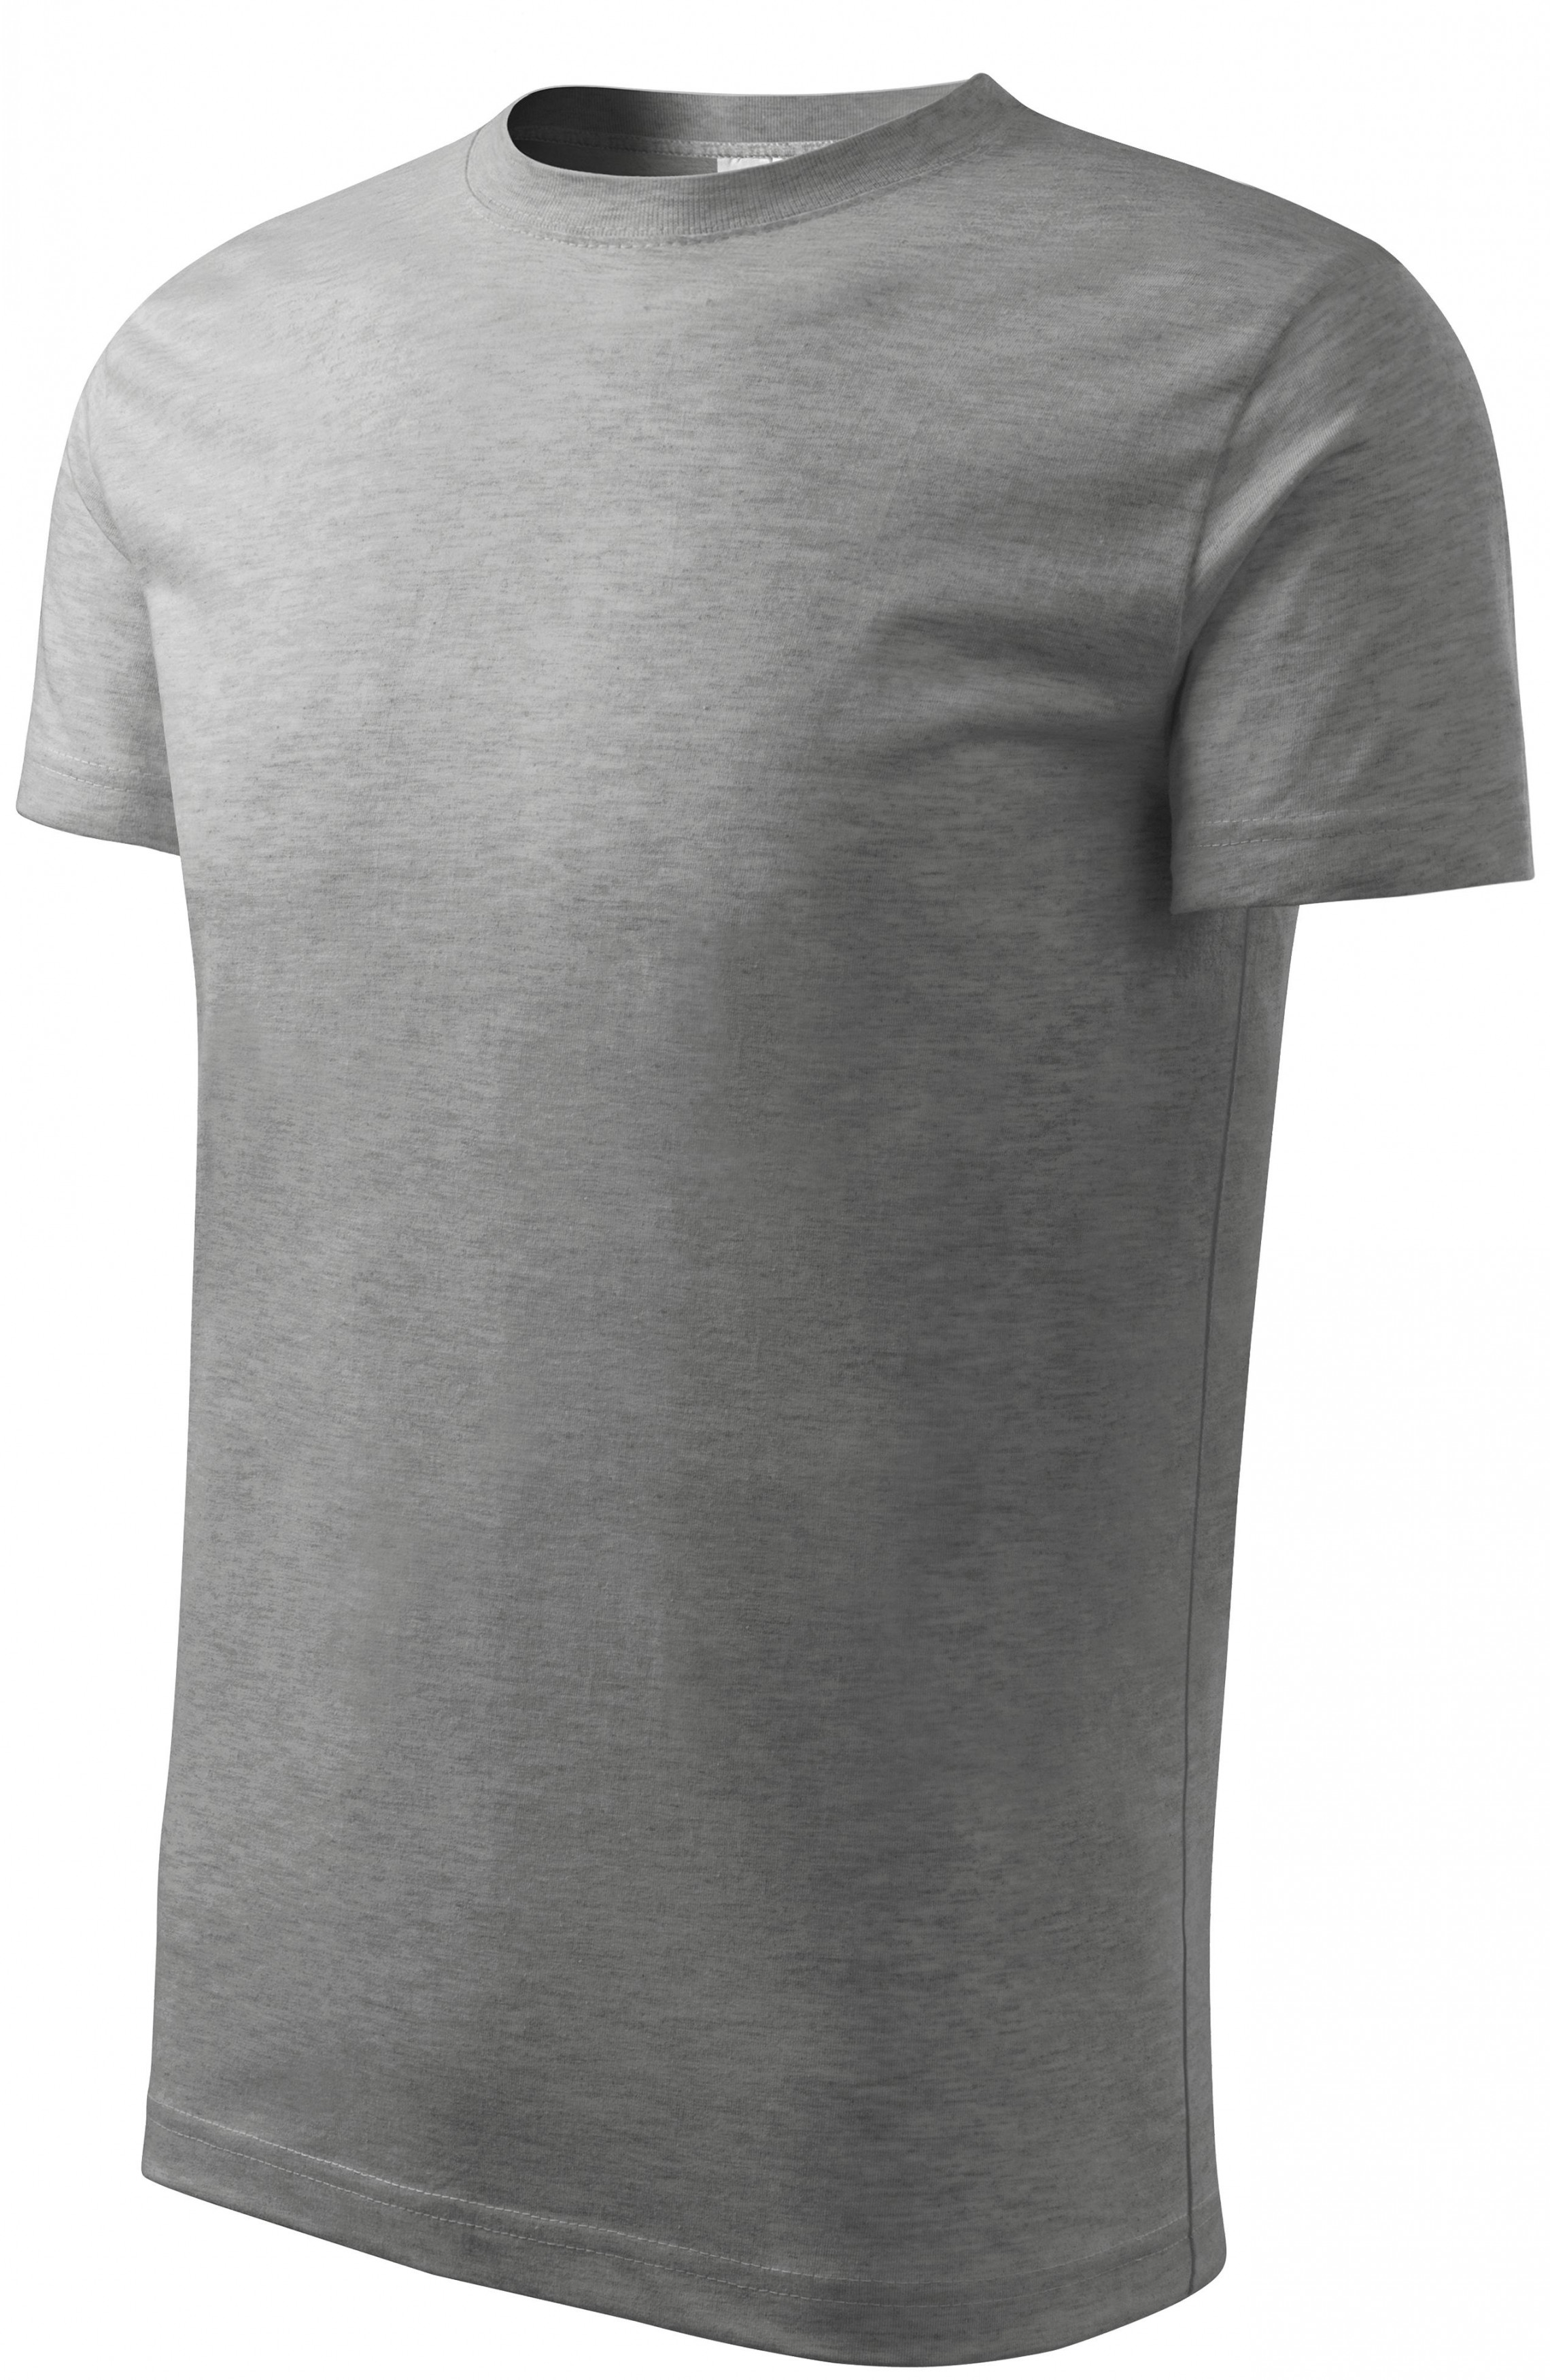 Detské tričko jednoduché, tmavosivý melír, 110cm / 4roky